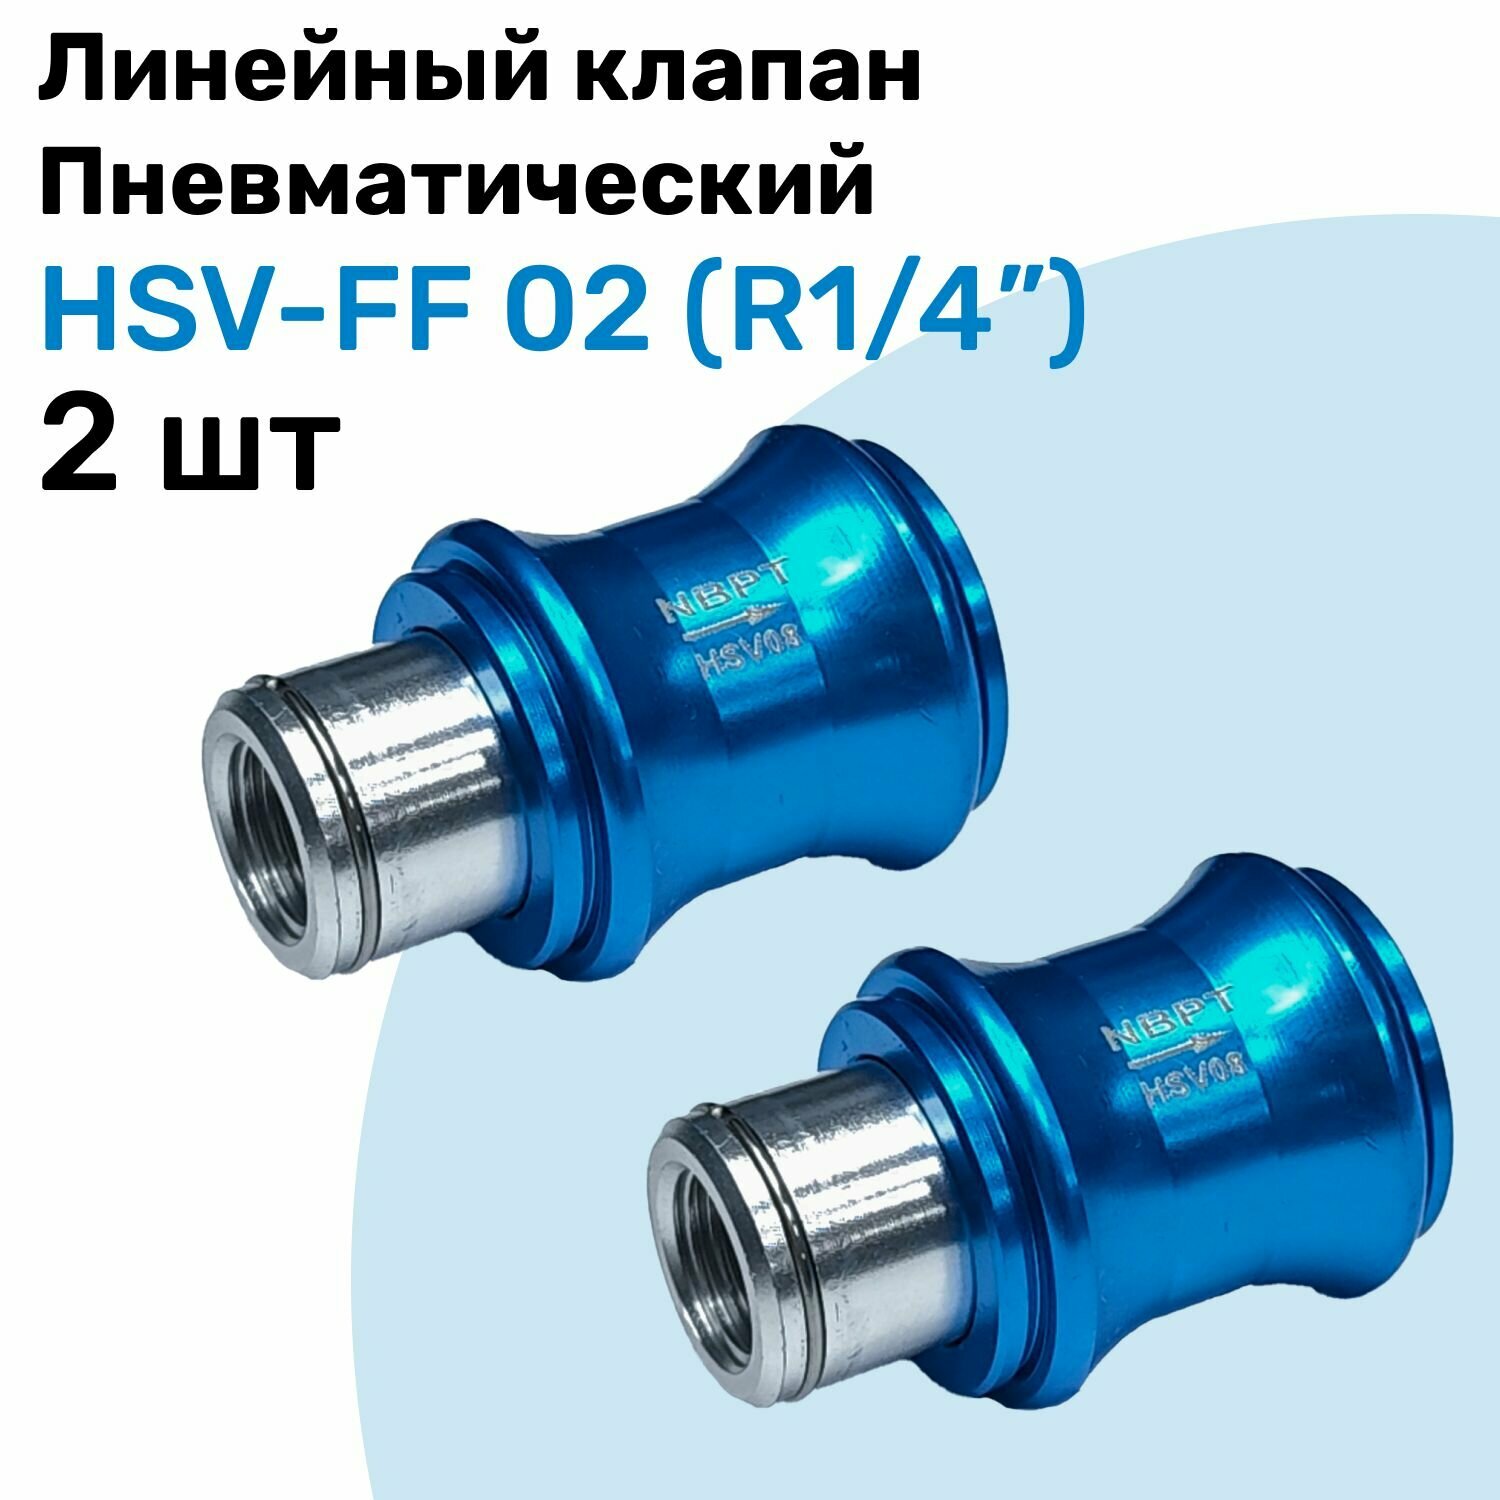 Линейный клапан пневматический HSV-FF 02, R1/4", Пневматический клапан NBPT, Набор 2шт